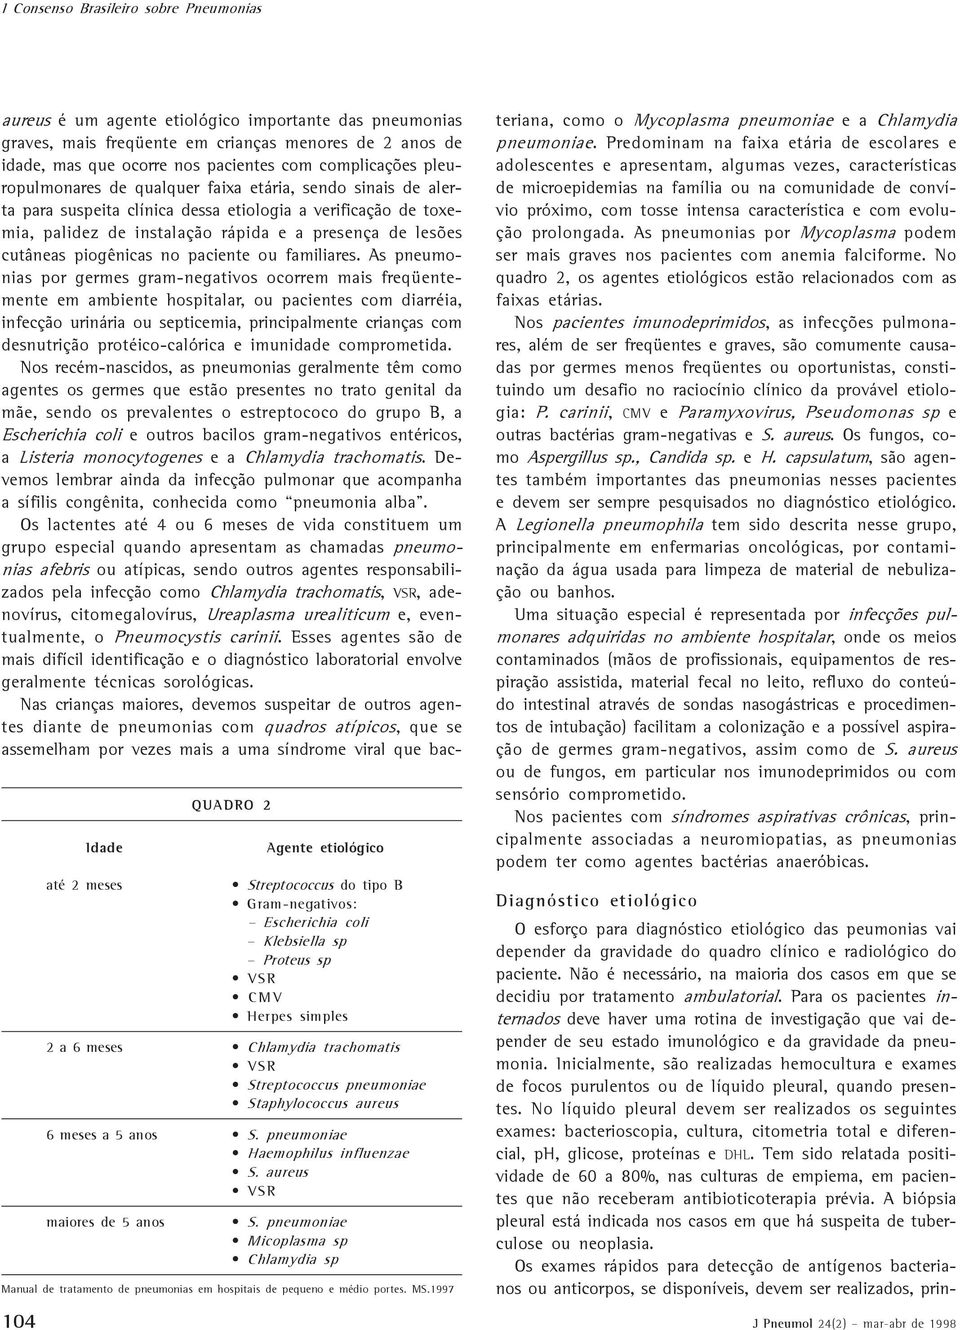 pneumoniae Micoplasma sp Chlamydia sp Manual de tratamento de pneumonias em hospitais de pequeno e médio portes. MS.